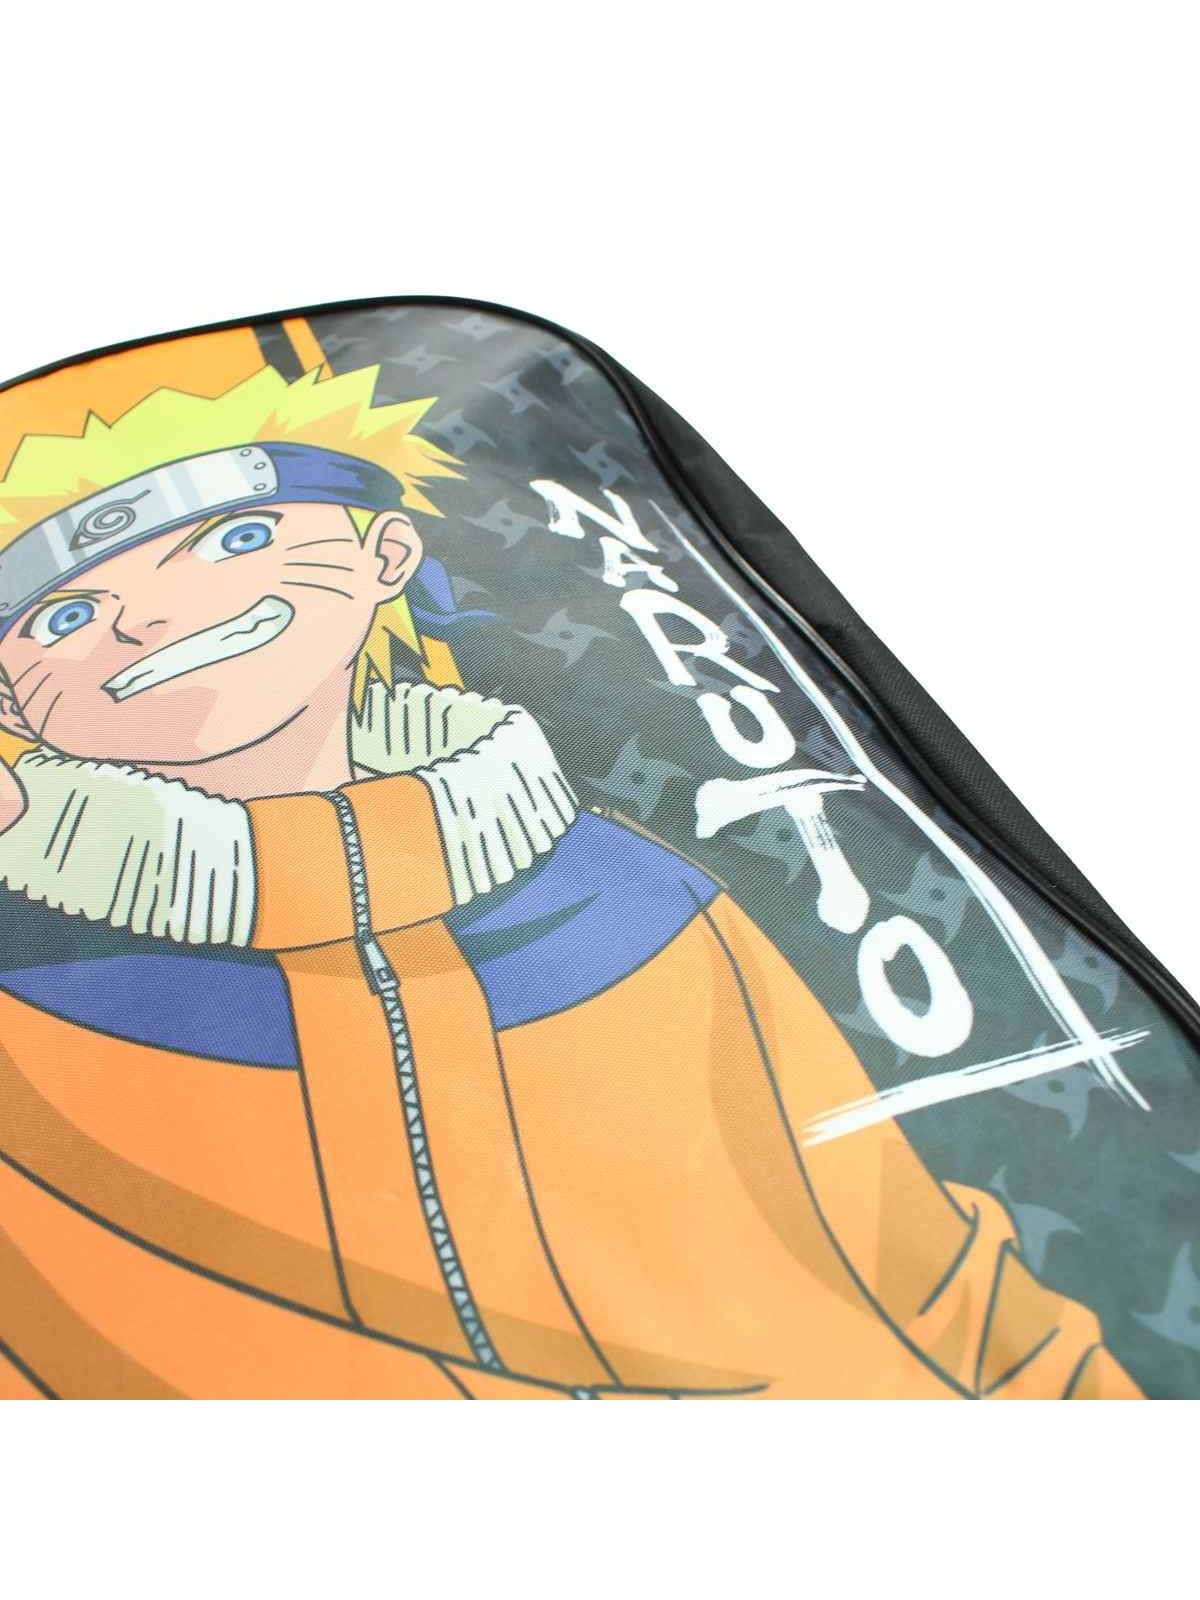 Naruto Backpack 40x30x15